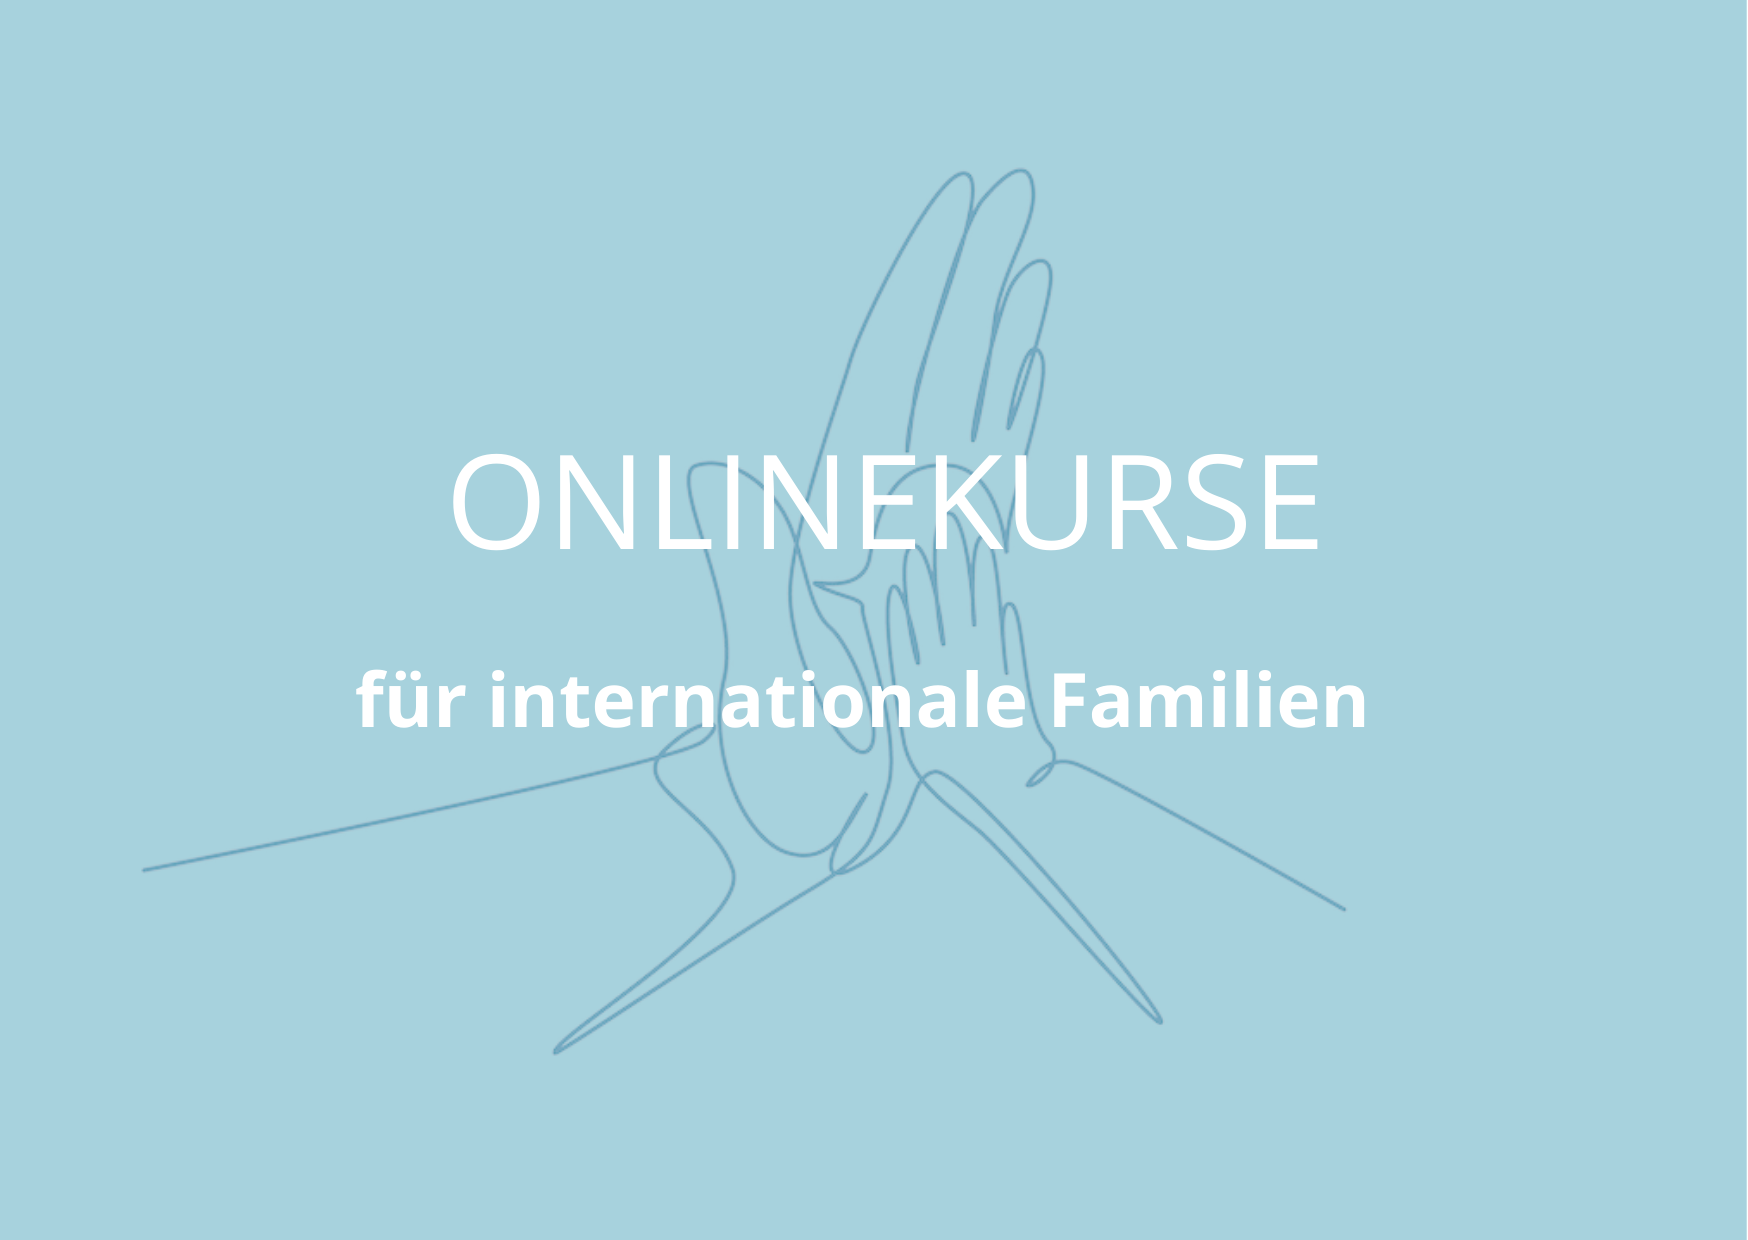 Onlinekurse für internationale Familien